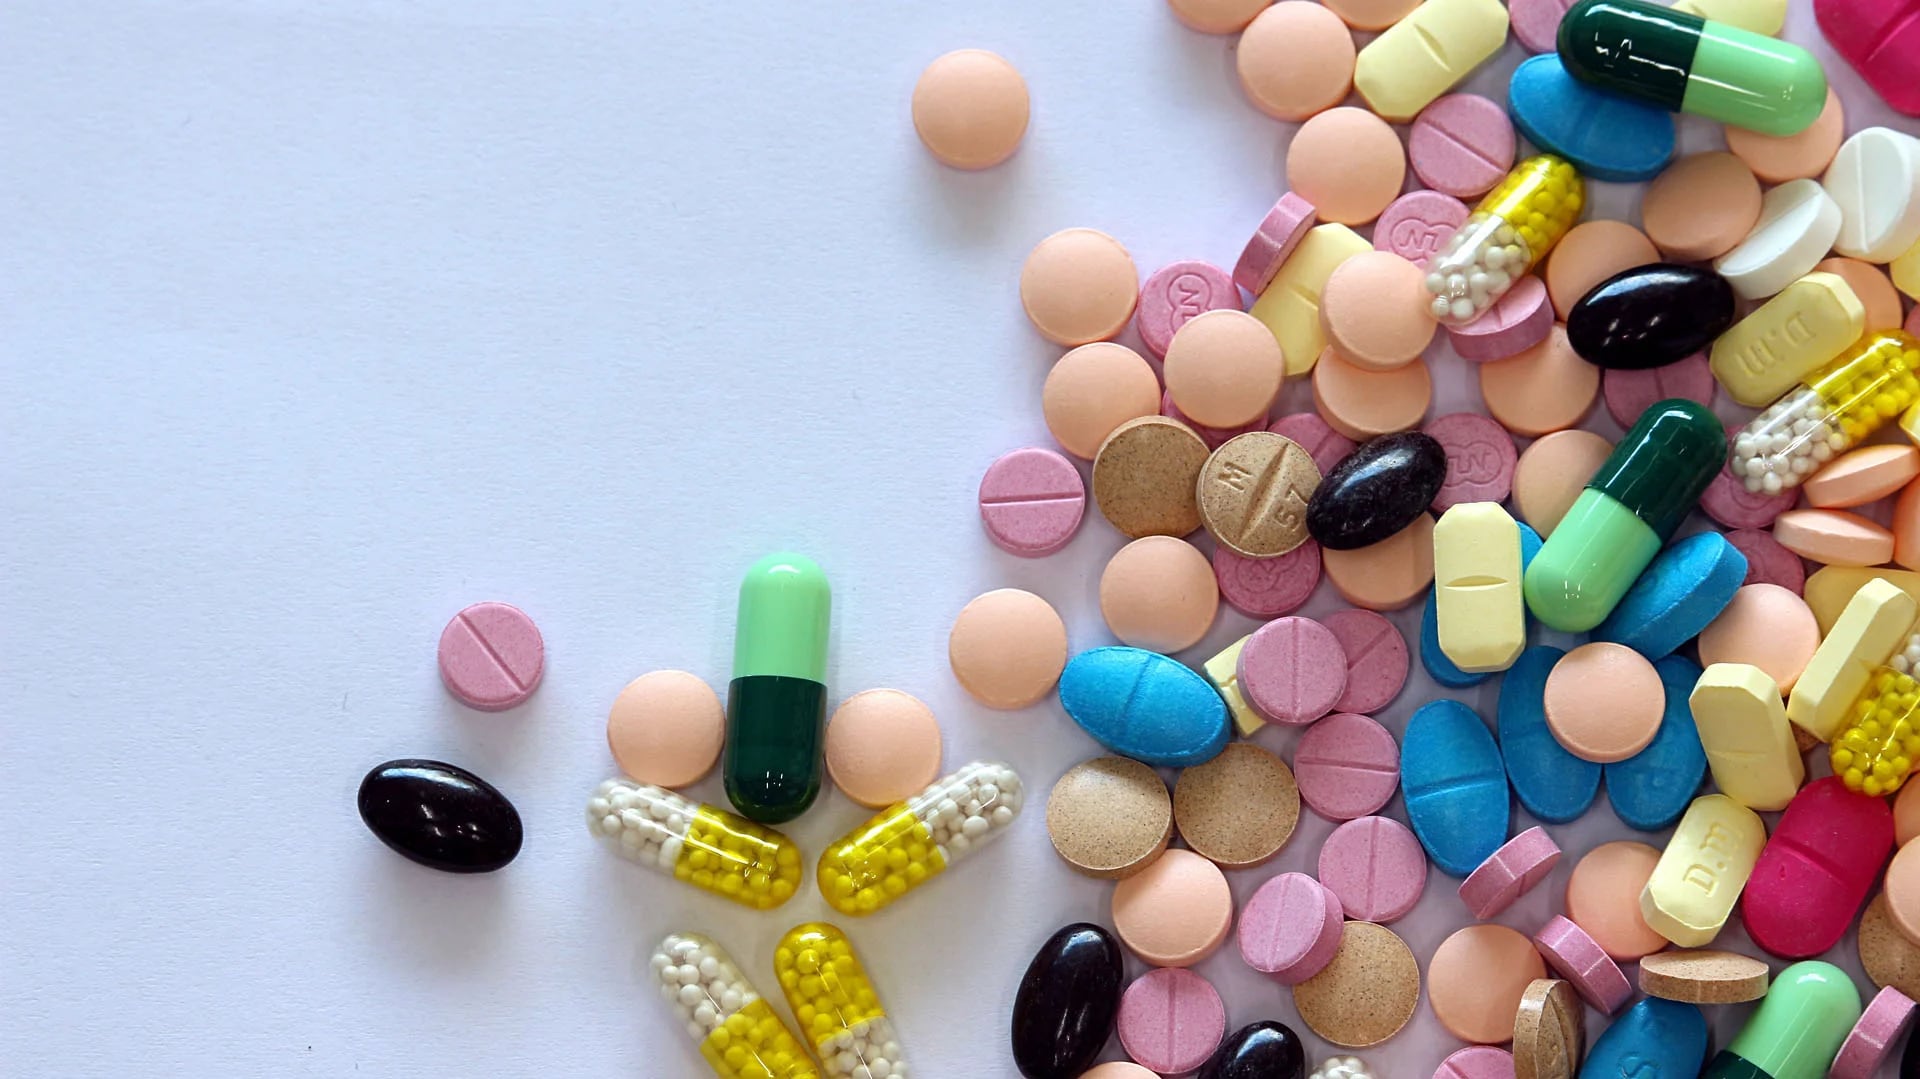 Muchos pacientes no están informados sobre el caracter adictivo de los opiaceos (Shutterstock)